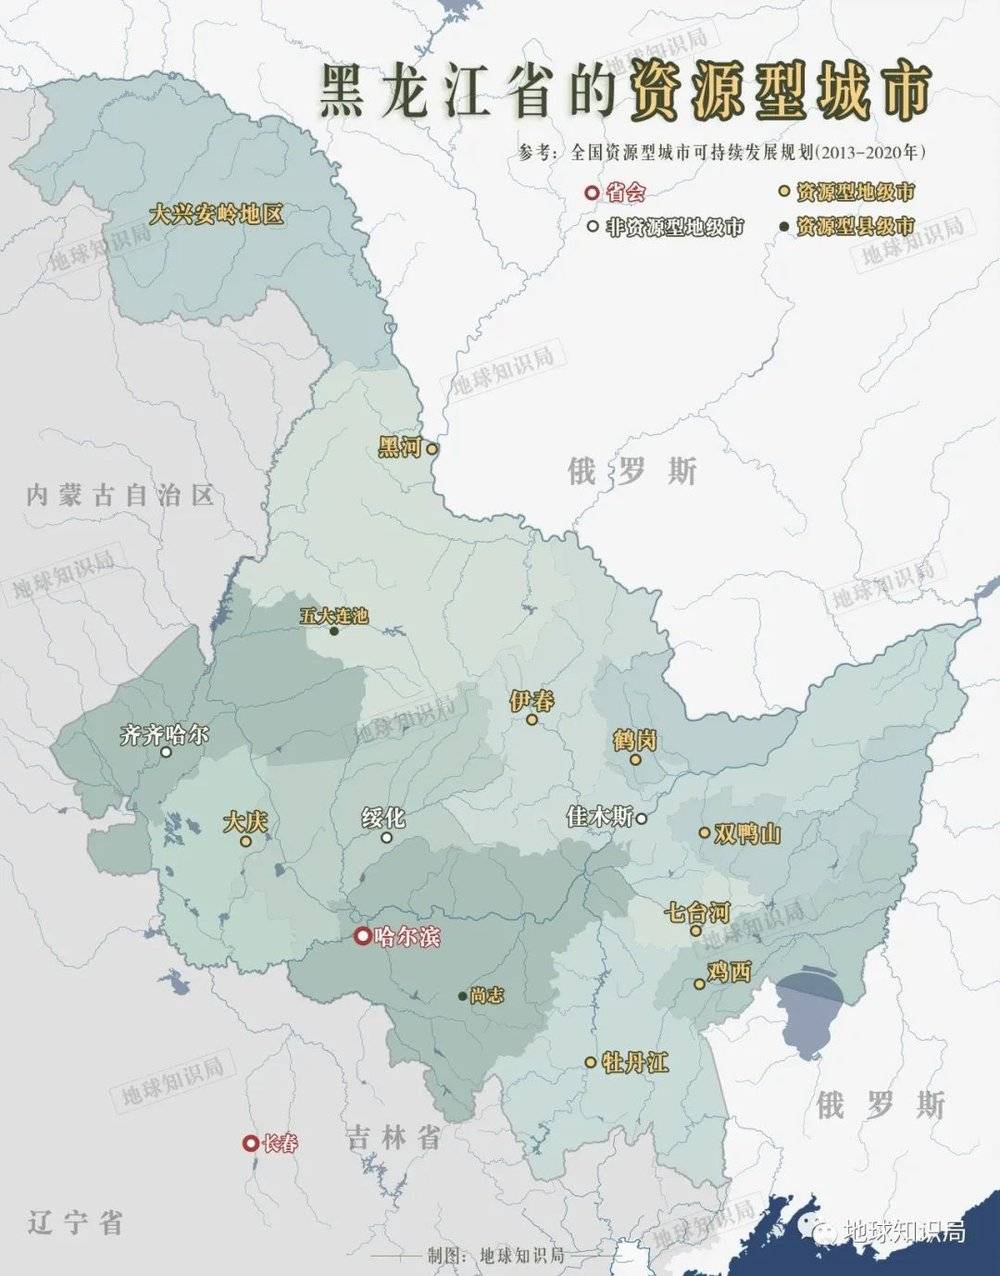 黑龙江一共有11个资源型城市，其中有9个是地级行政区